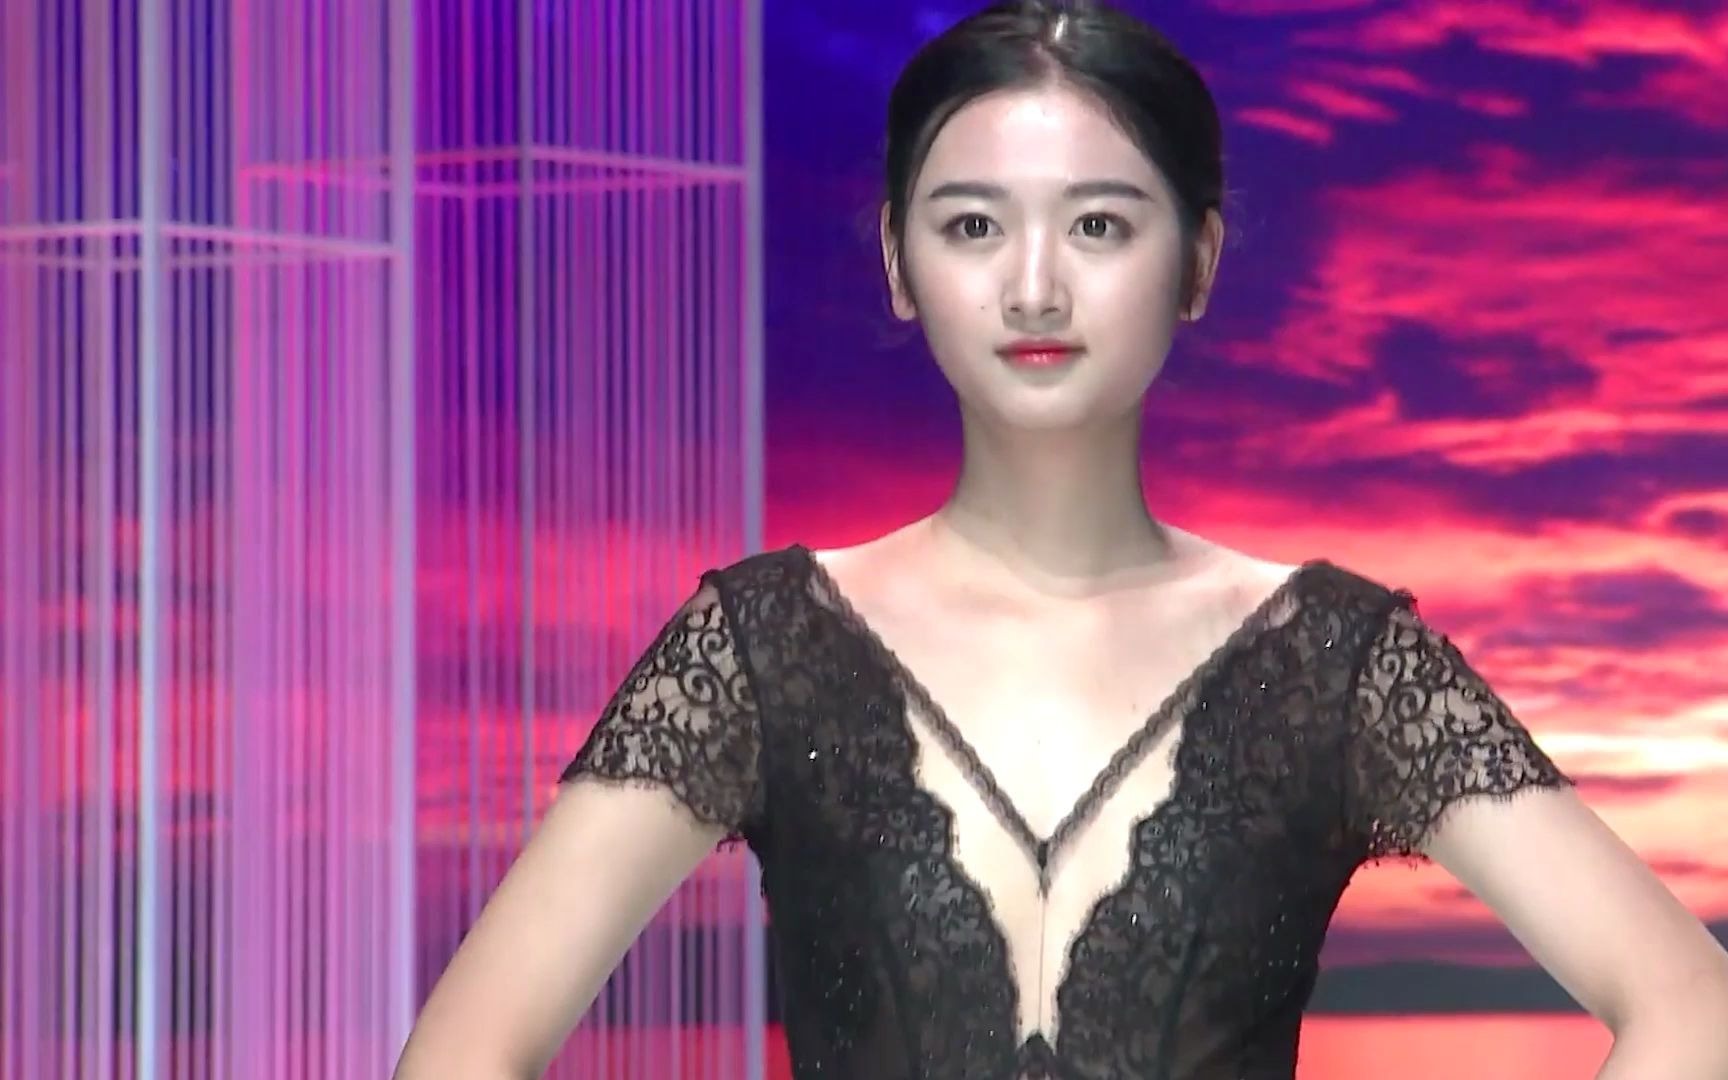 深圳国际超模大赛内衣图片